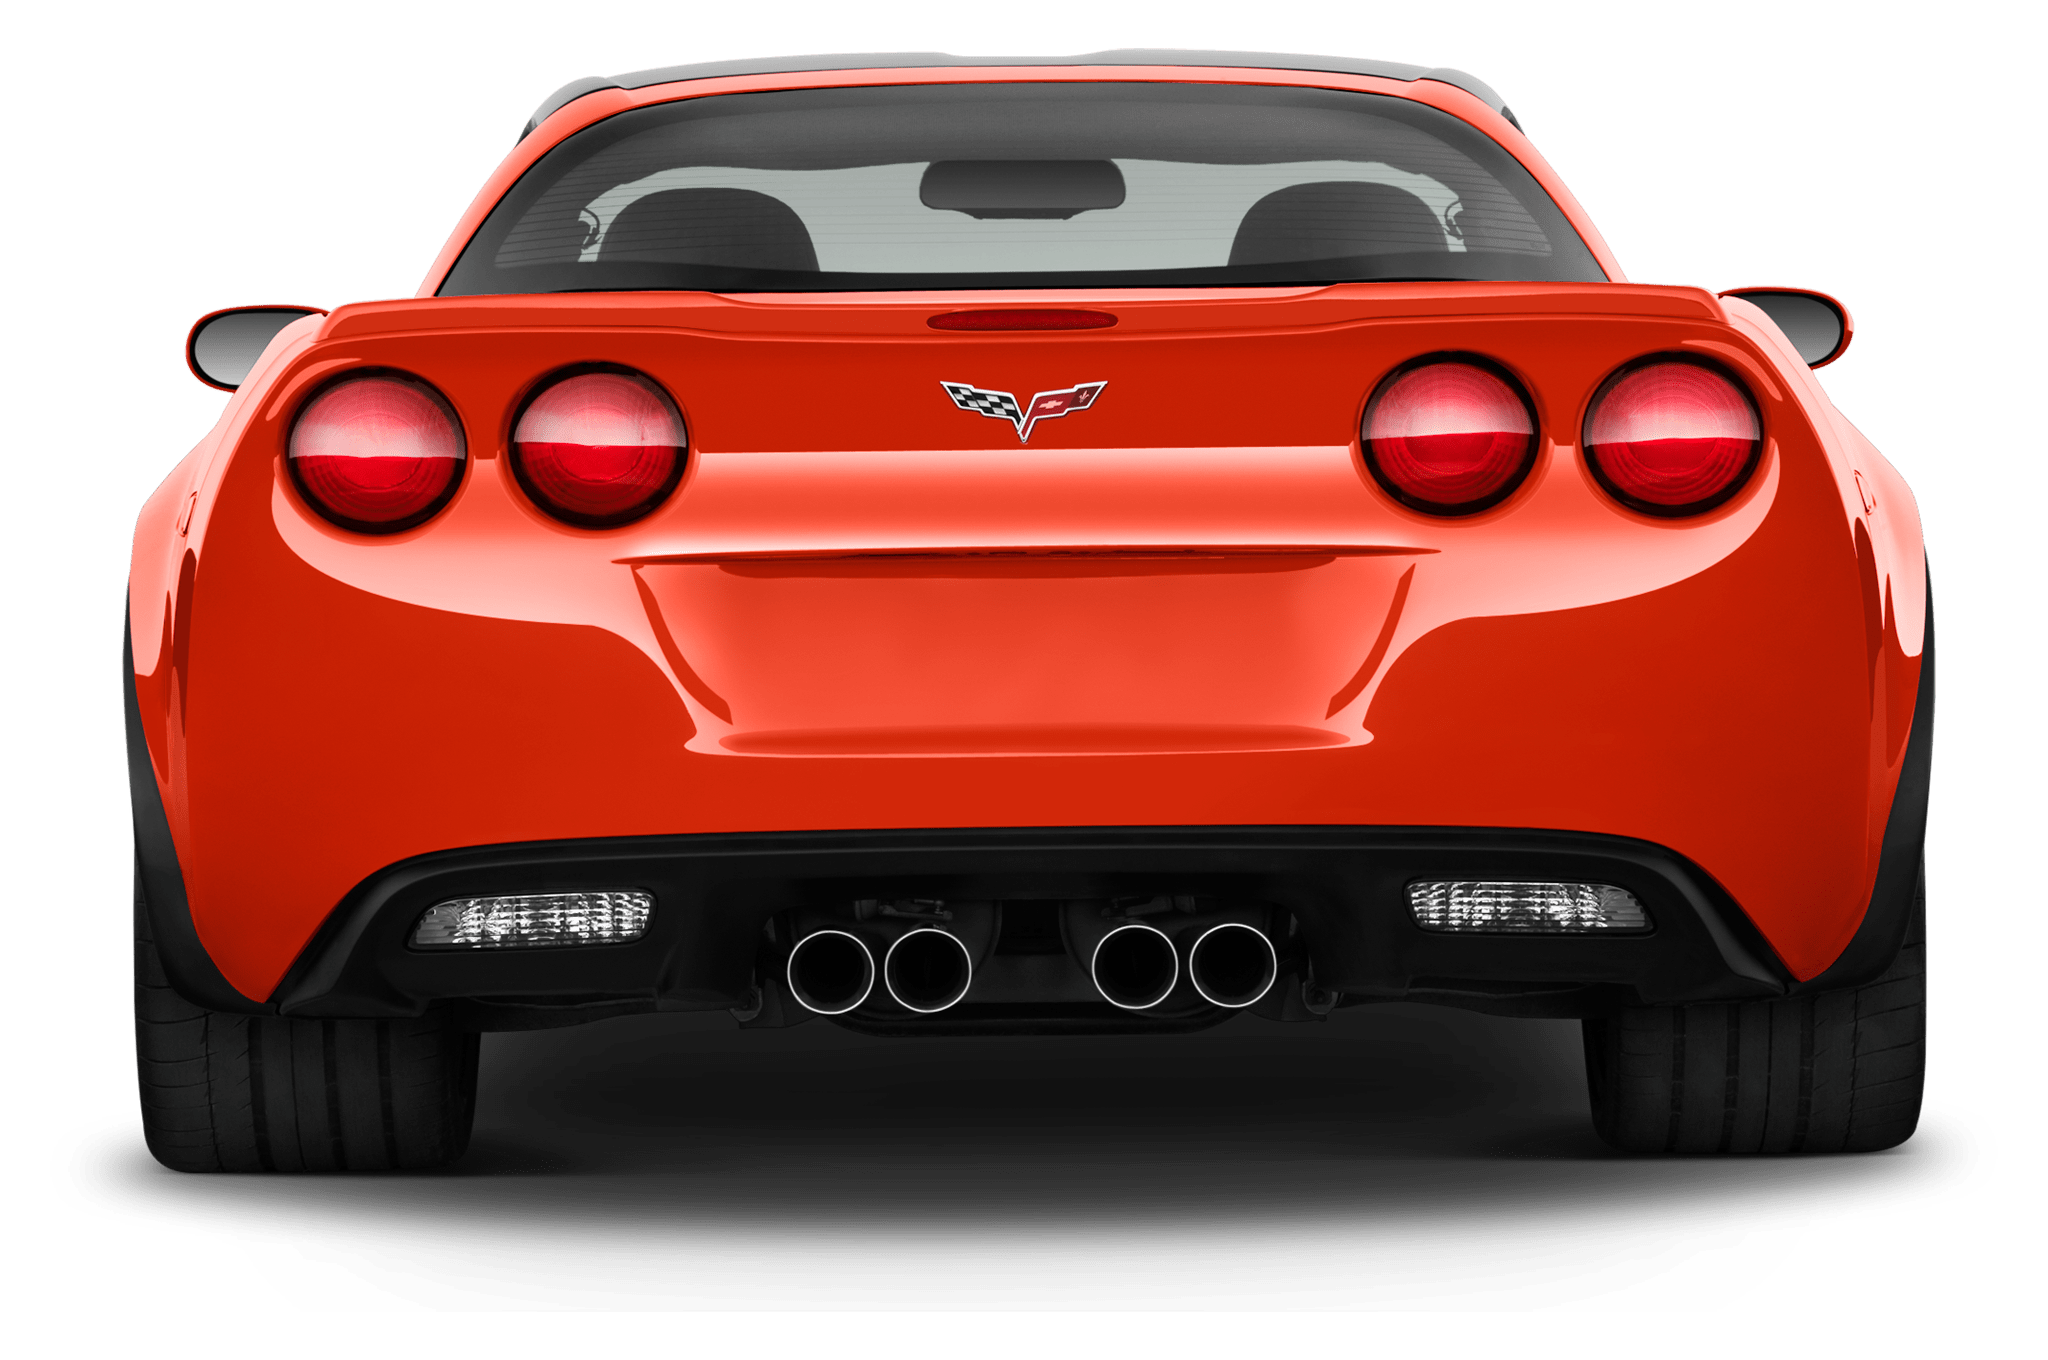 Imagem de alta qualidade do carro Corvette Corvette vermelho